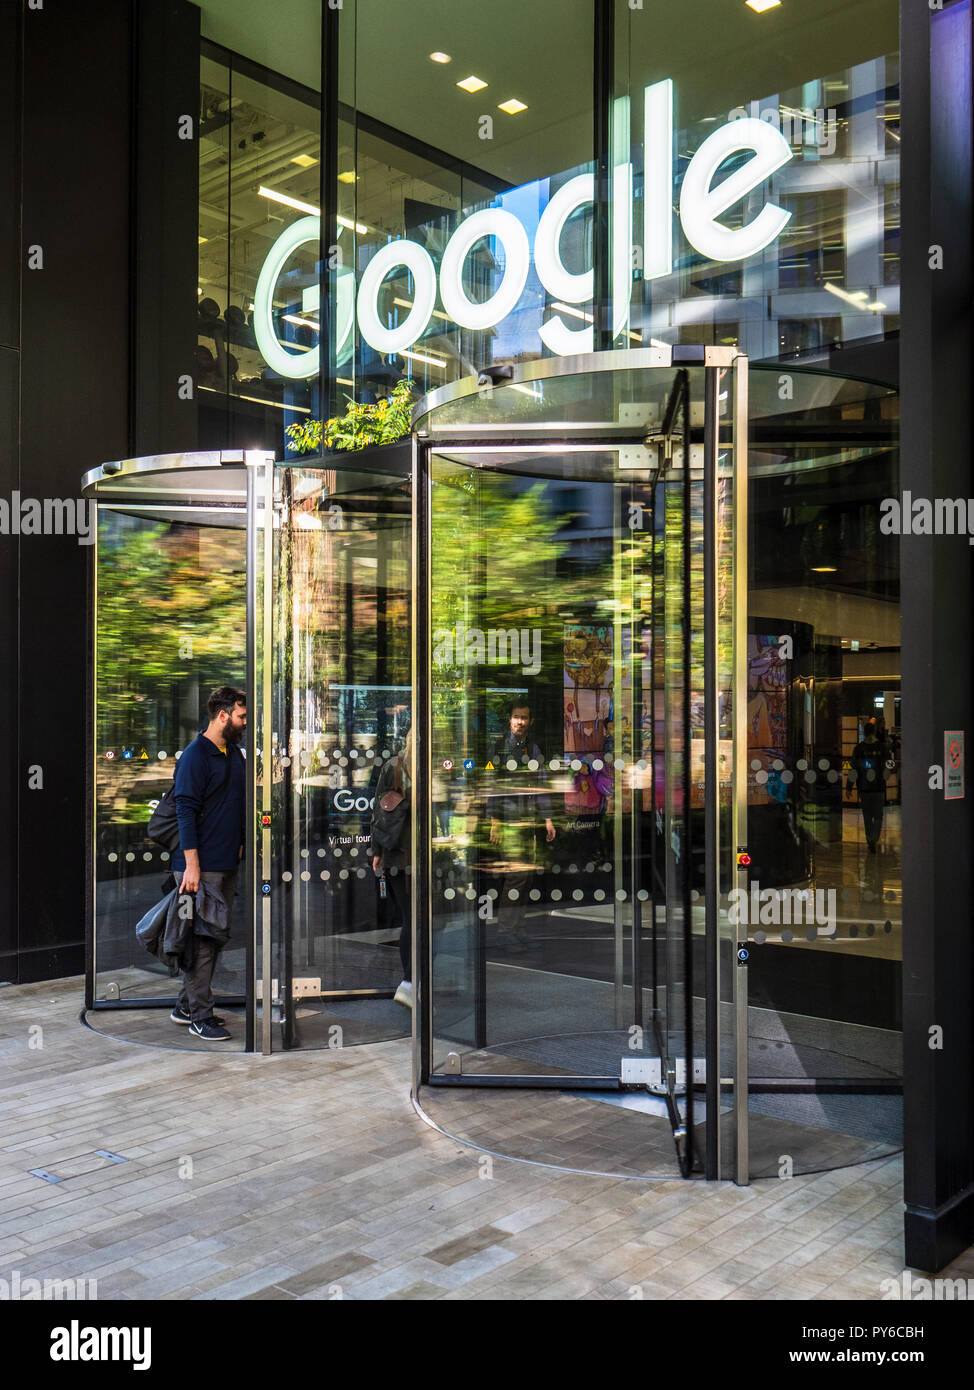 Google Londra - UK di Google e Youtube uffici di Londra a 6 Pancras piazza vicino alla stazione di King Cross a Londra REGNO UNITO Foto Stock